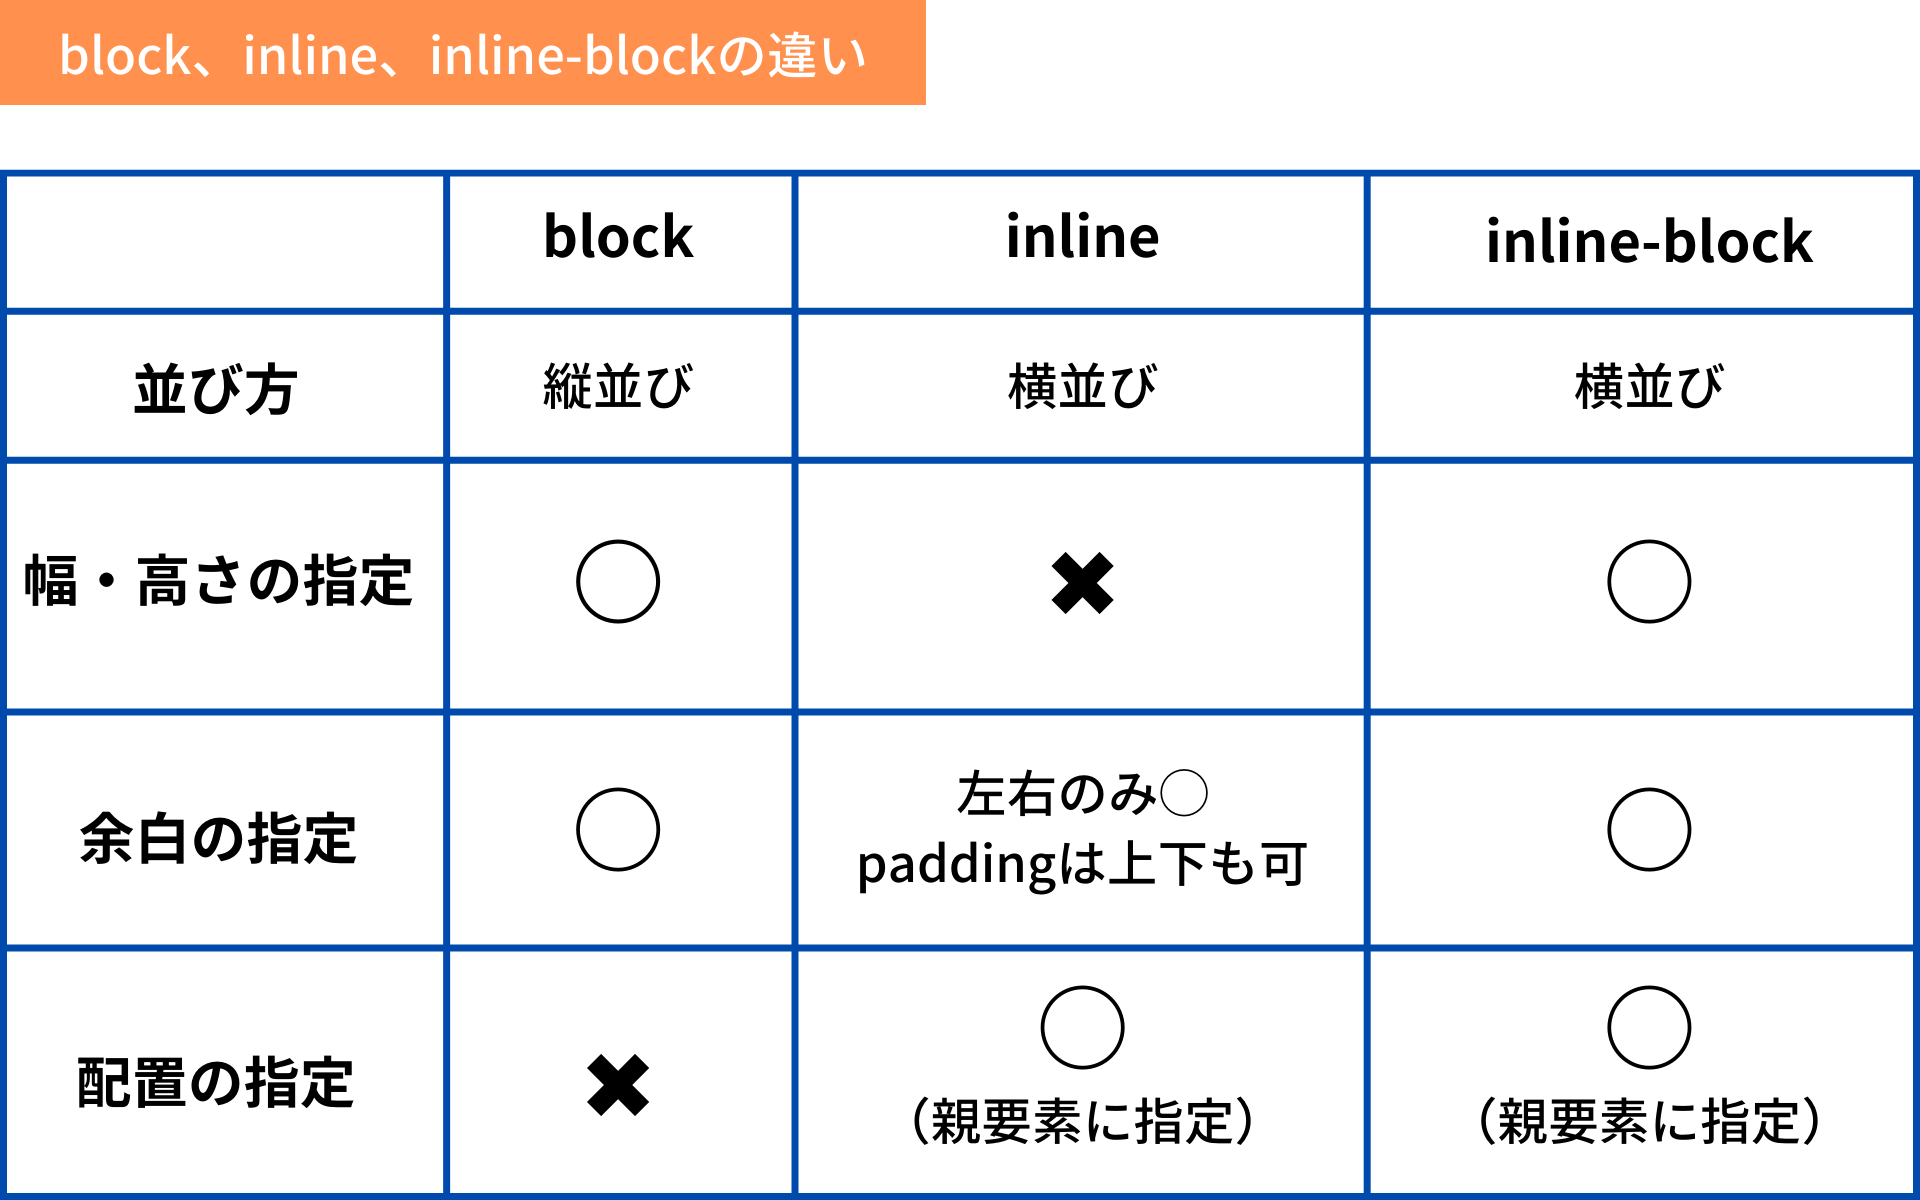 block、inline、inline-blockの違いをまとめた表の画像です